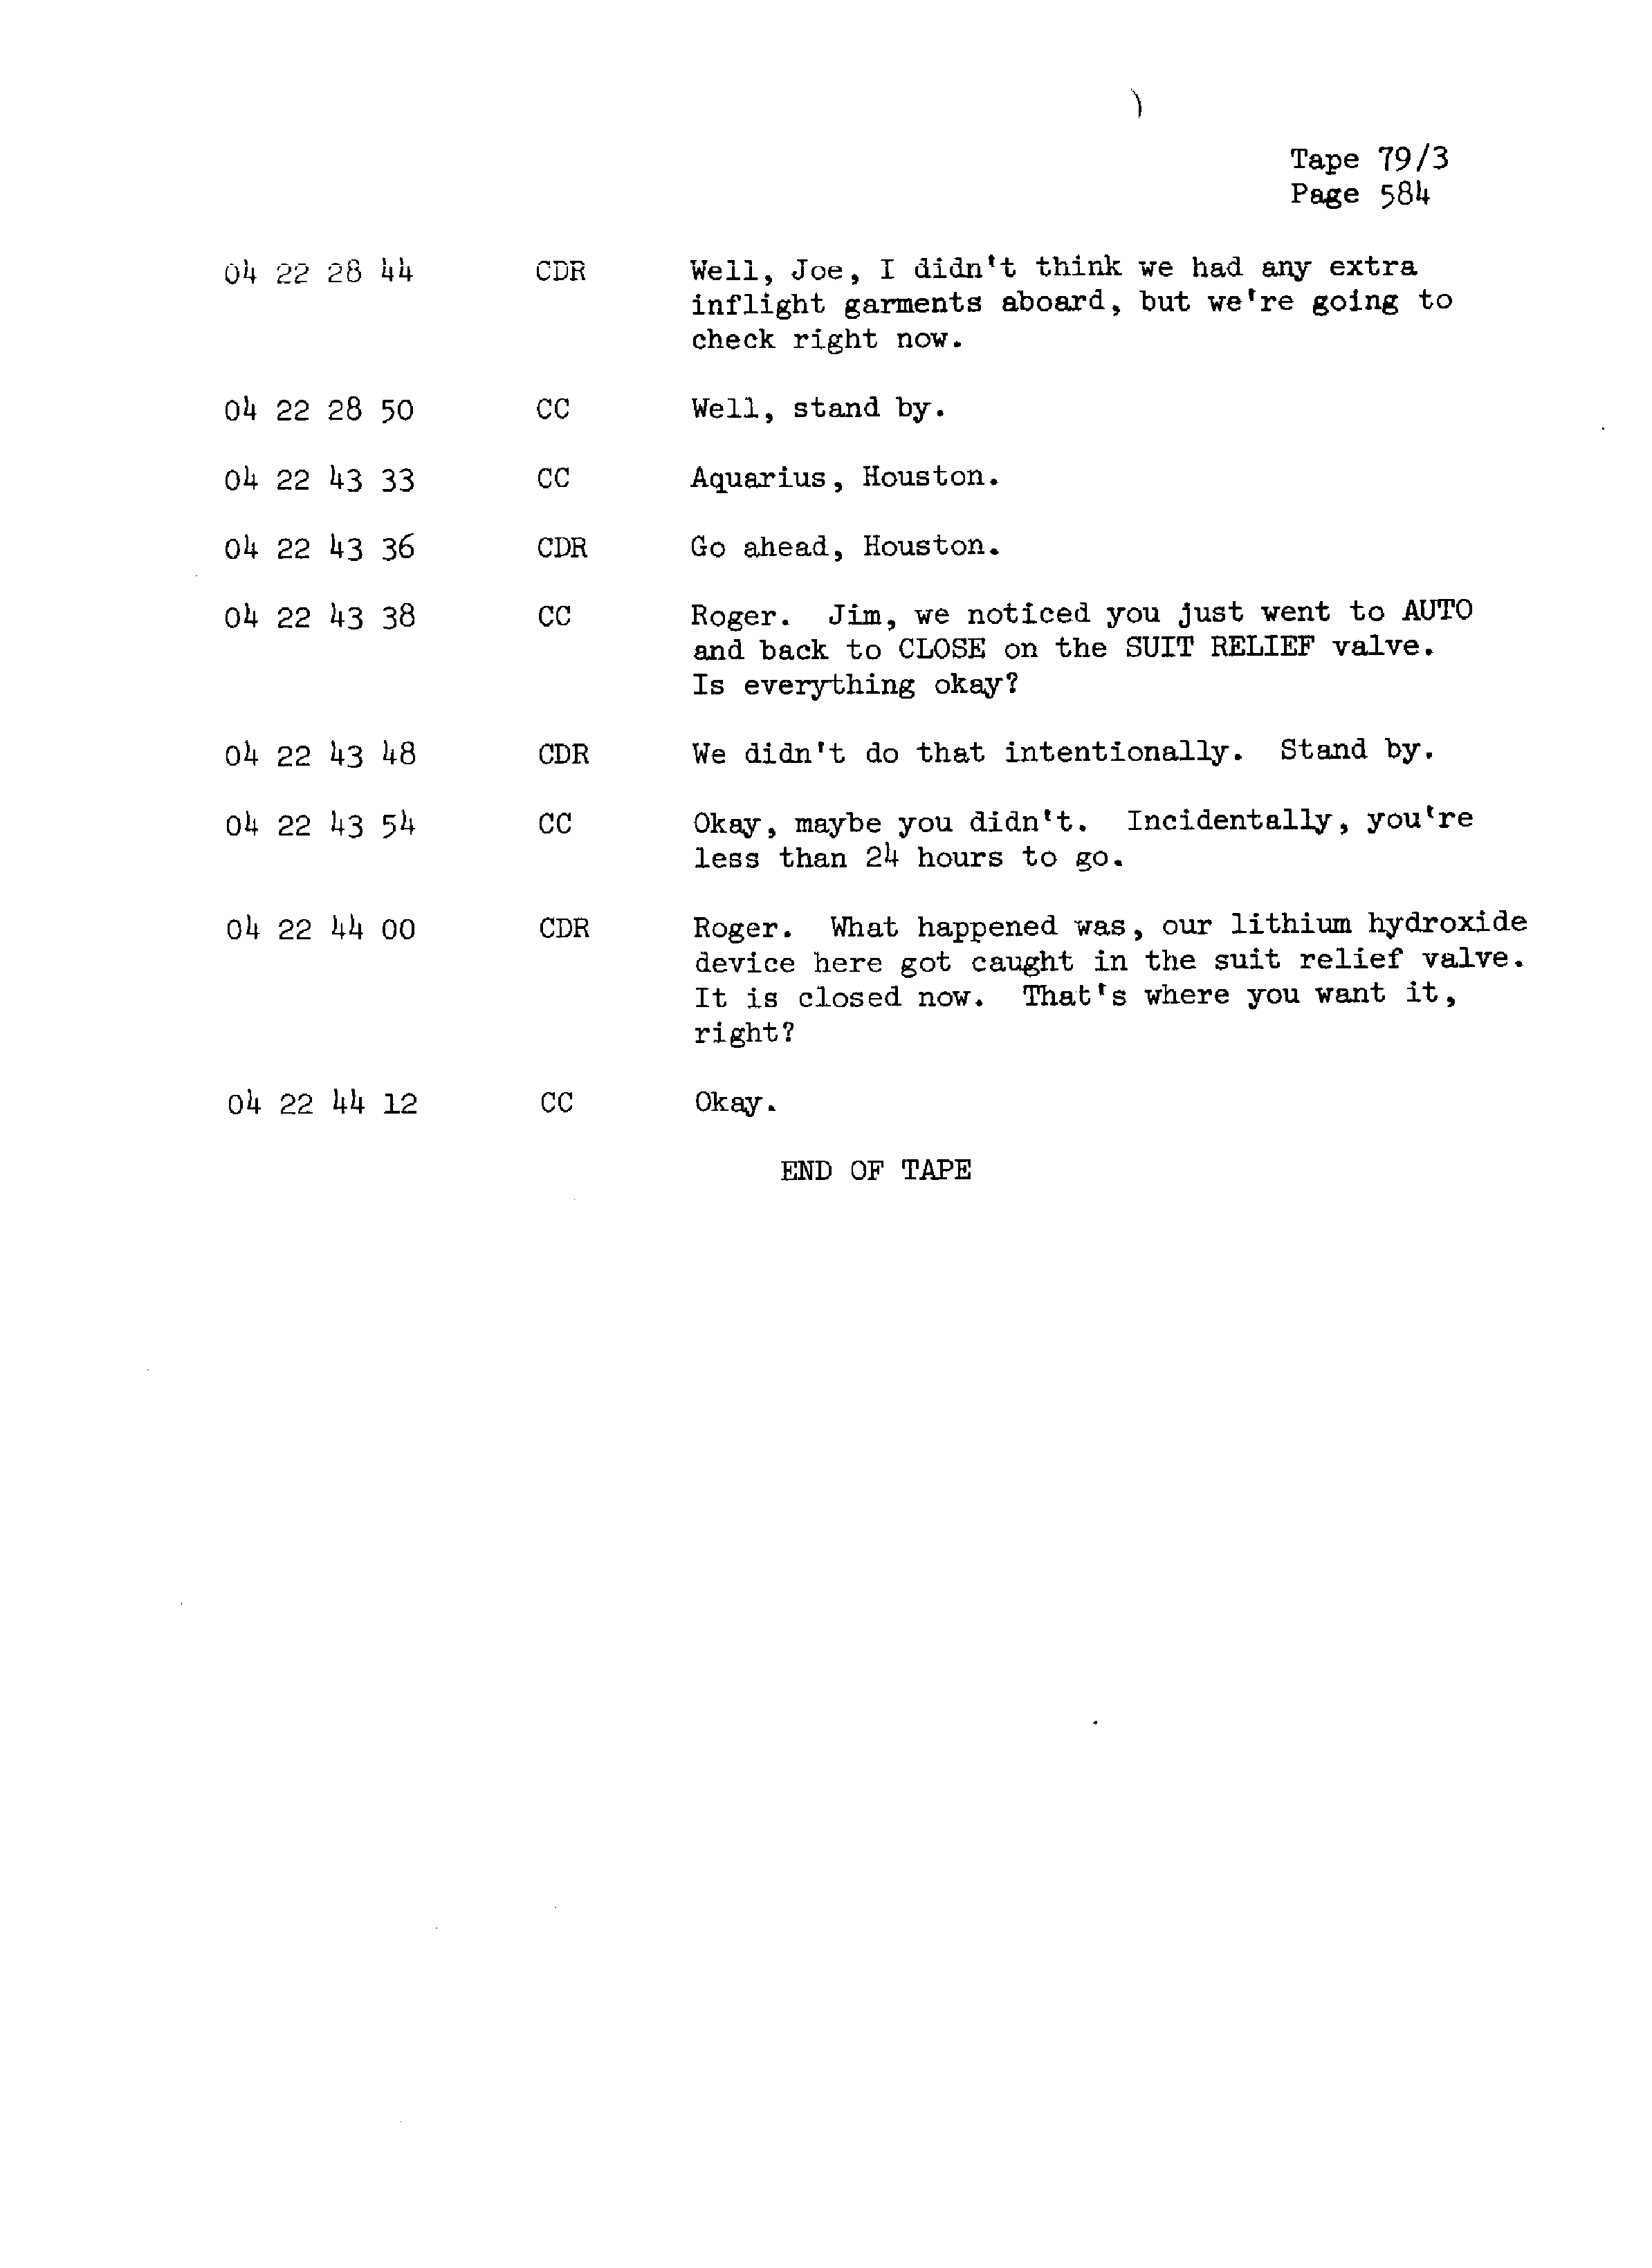 Page 591 of Apollo 13’s original transcript